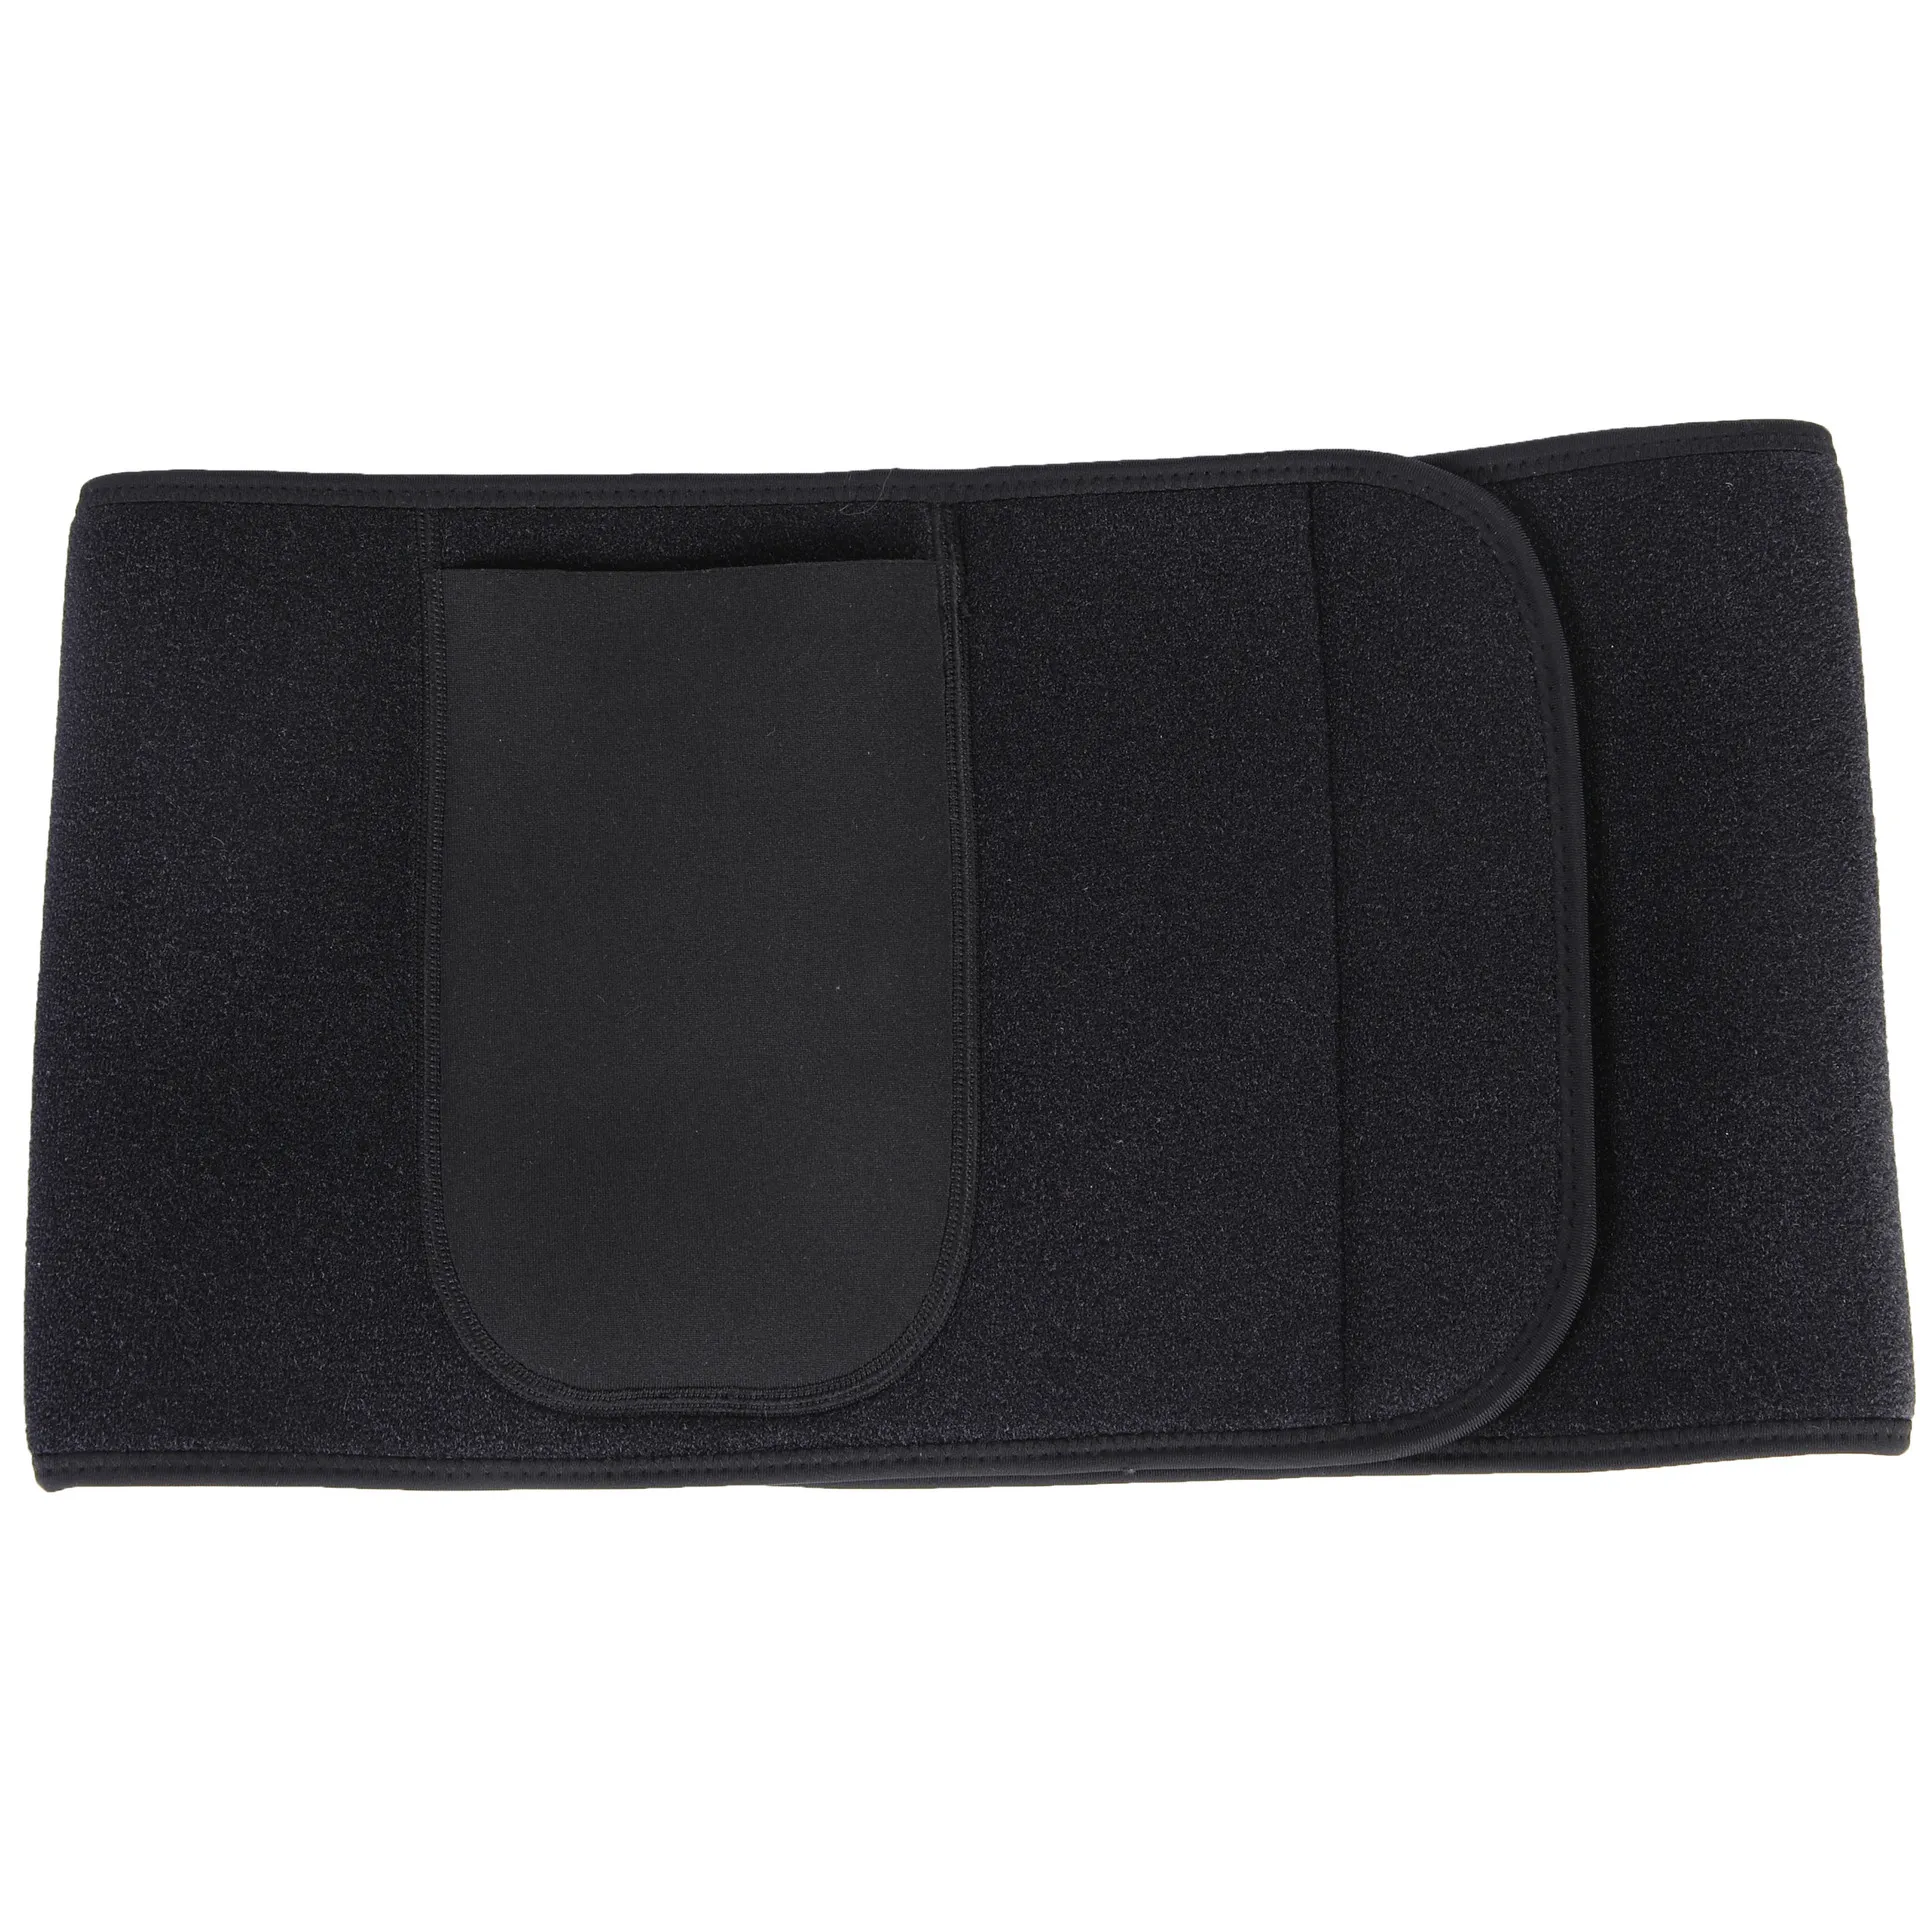 Nueva llegada Unisex sudor cintura cinturón Premium gimnasio cintura Trimmer para hombres mujeres cuerpo Shaper con teléfono bolsillo adelgazamiento cinturones envío de la gota